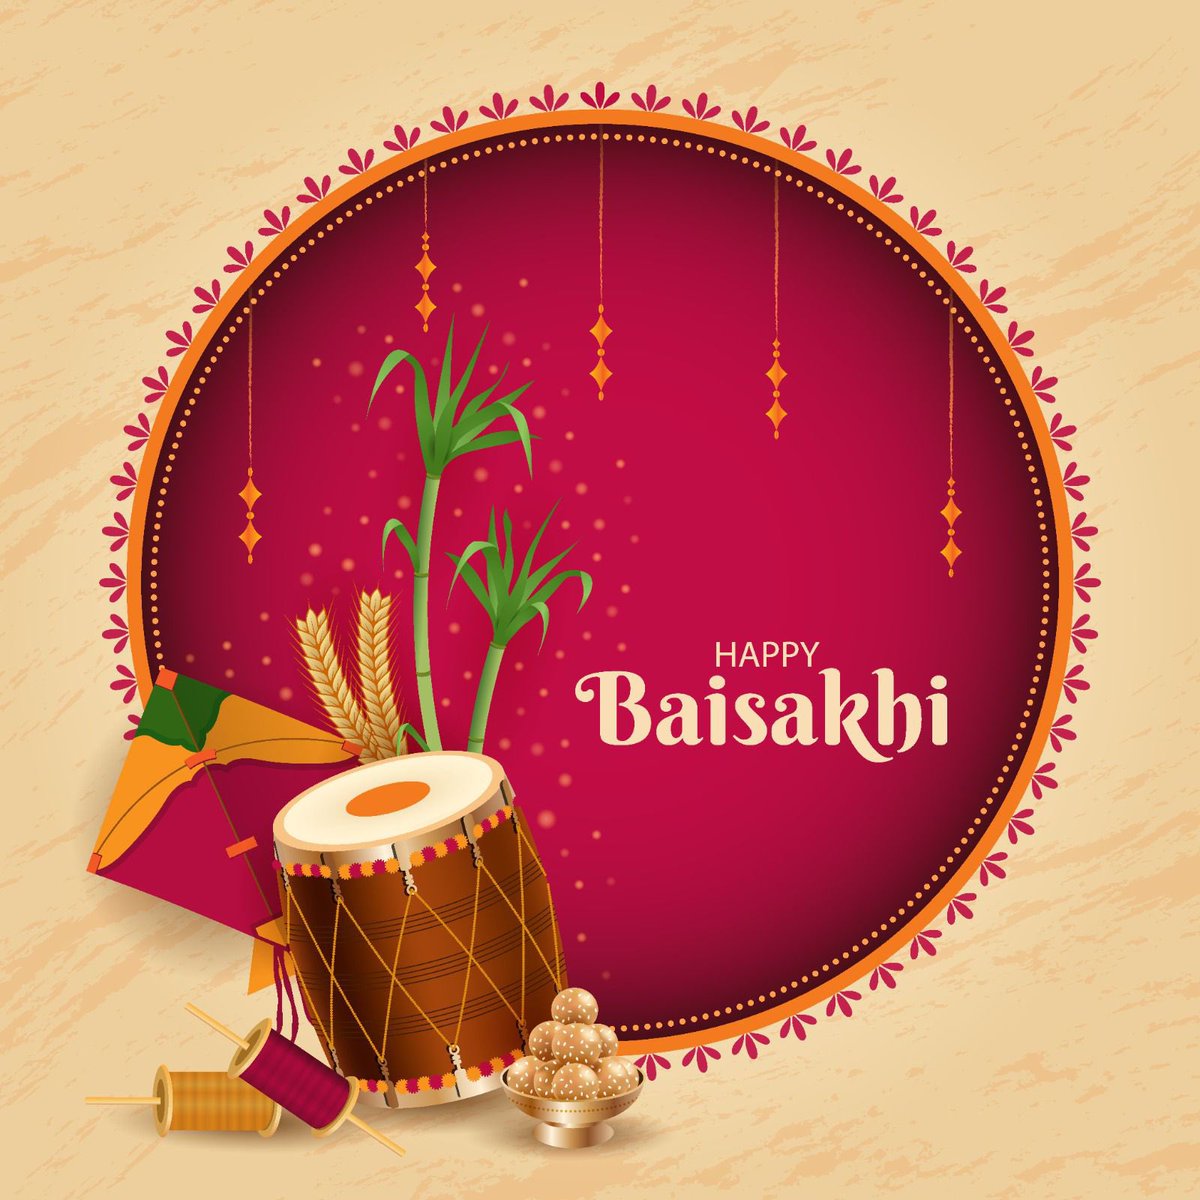 बैसाखी पर आपके घर खुशियों की बहार आए, ढेर सारी उमंग और उम्मीद जगाए। बैसाखी दी लाख लाख वधाईयाँ आप सभी को! #Baisakhi #Baisakhi2024